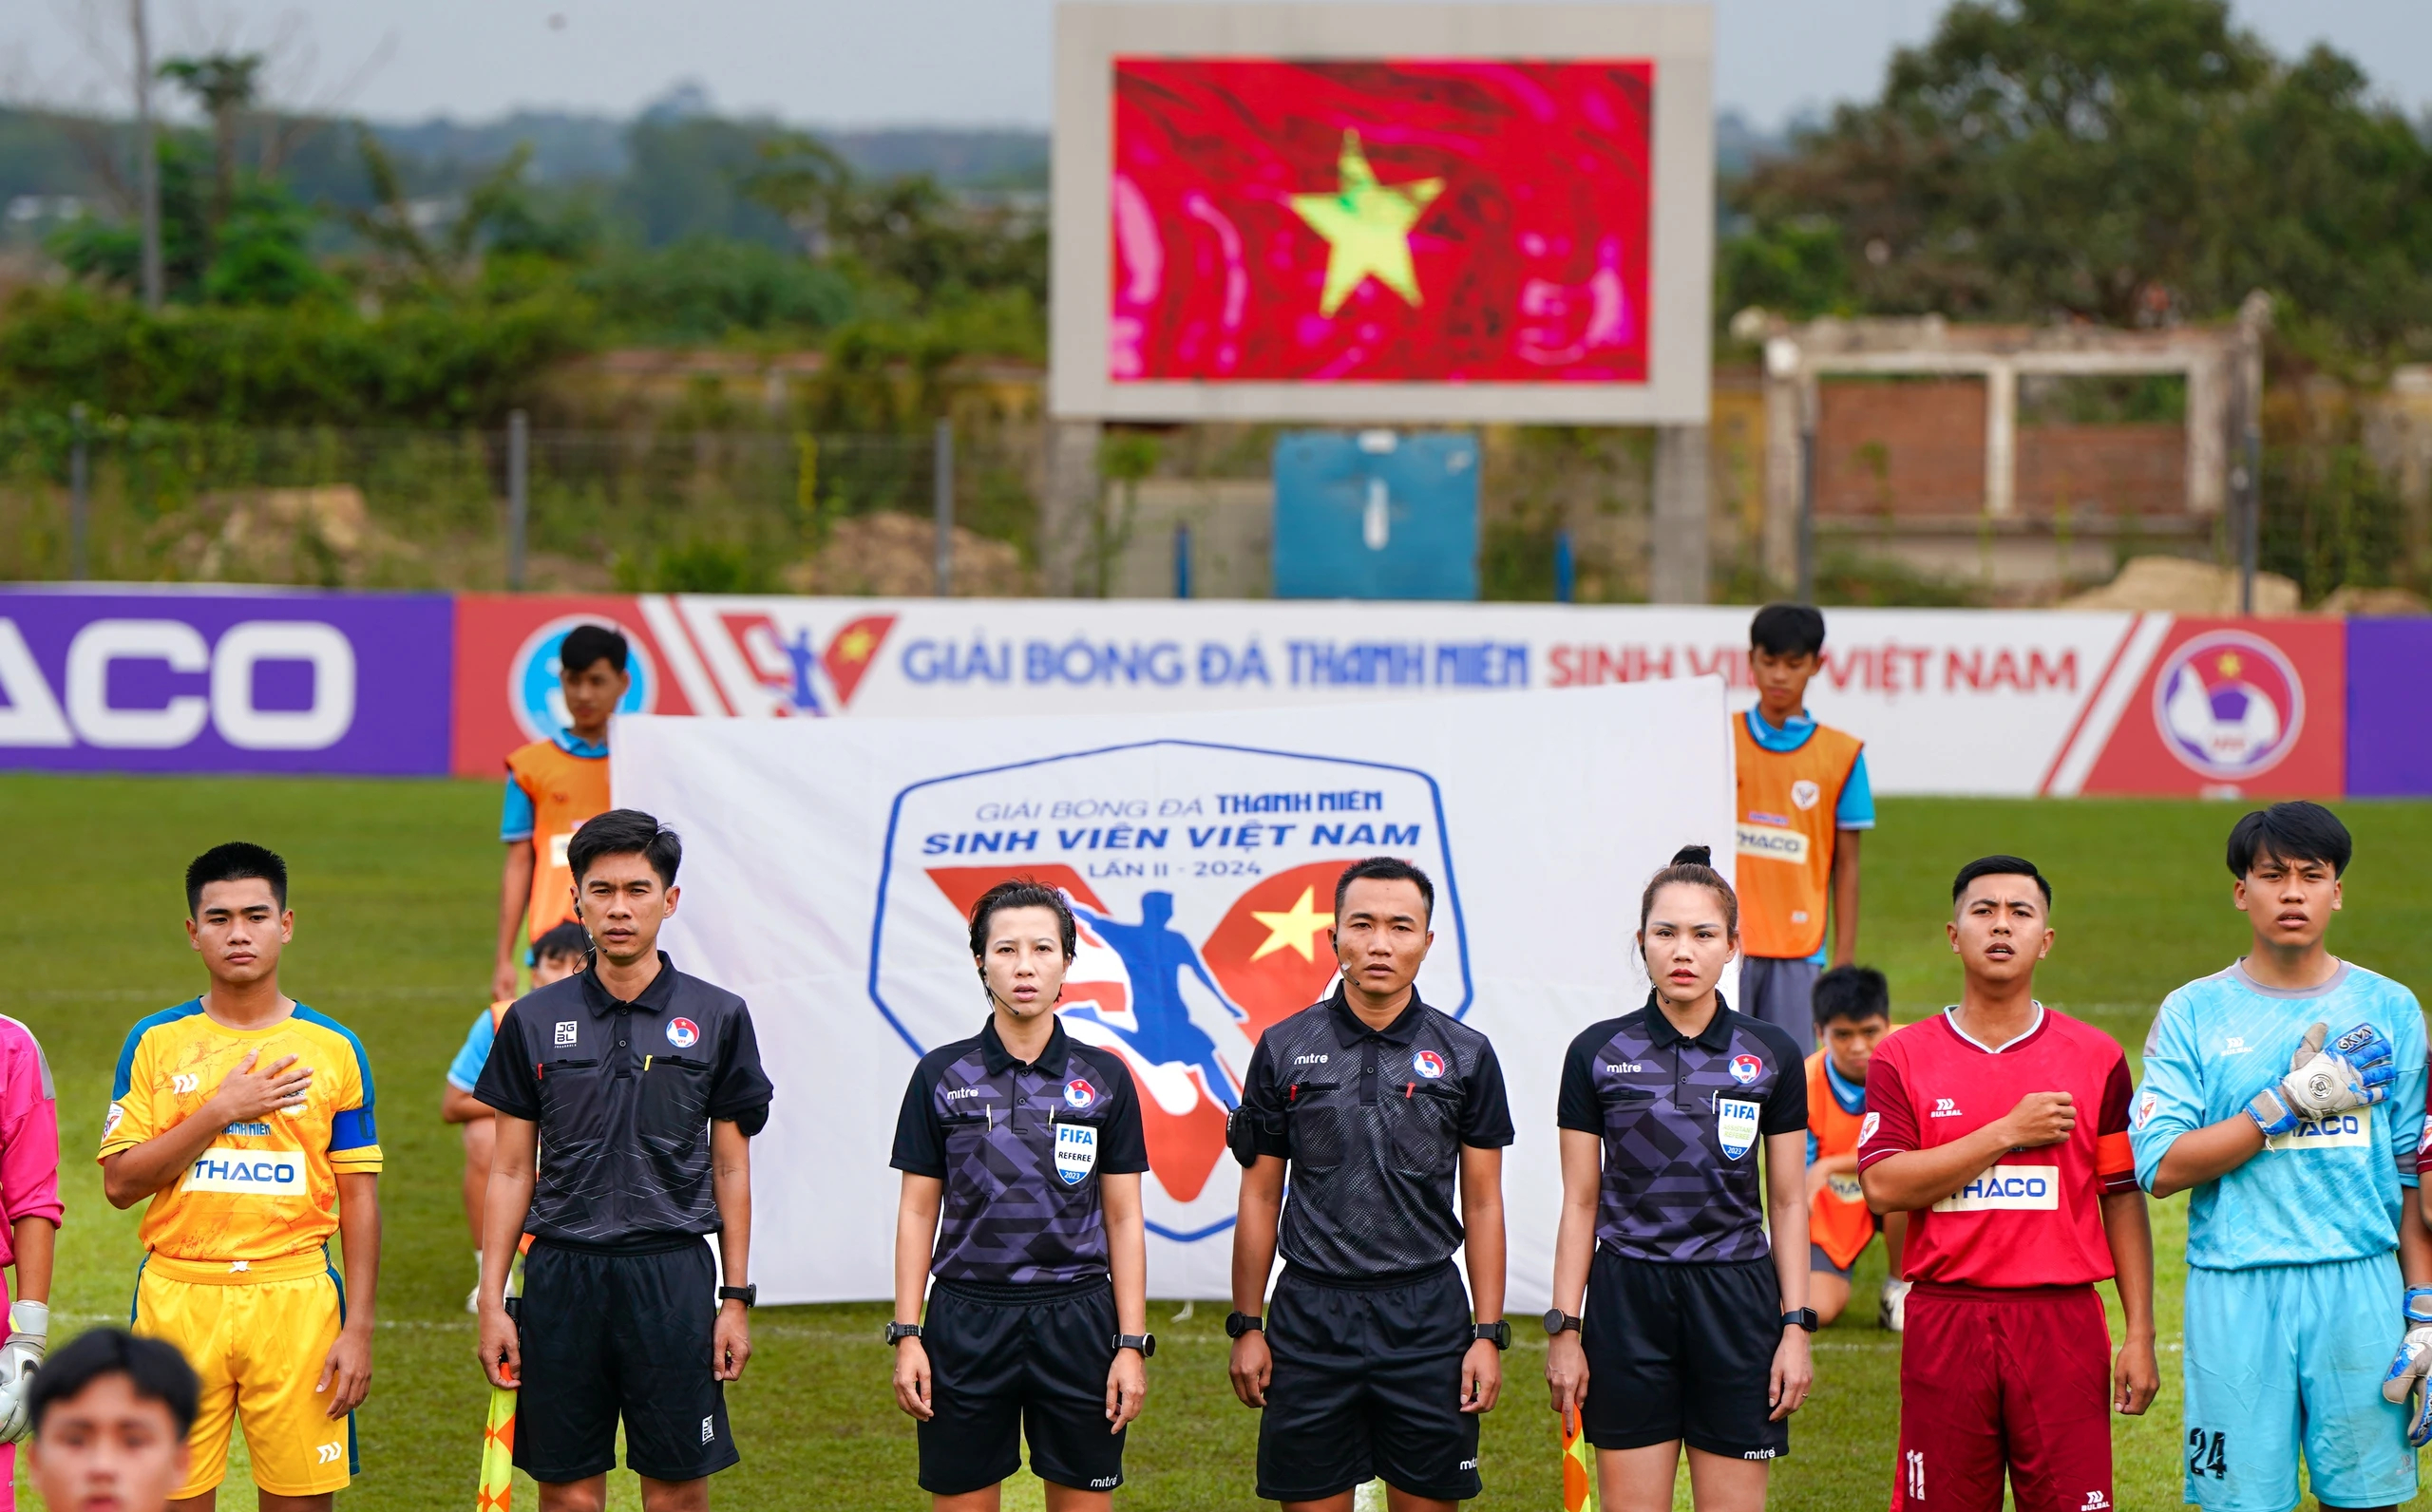 Nữ trọng tài FIFA Bùi Thị Thu Trang và nữ trợ lý FIFA Hà Thị Phượng tại vòng loại giải TNSV THACO Cup 2024 trên sân Bàu Thành